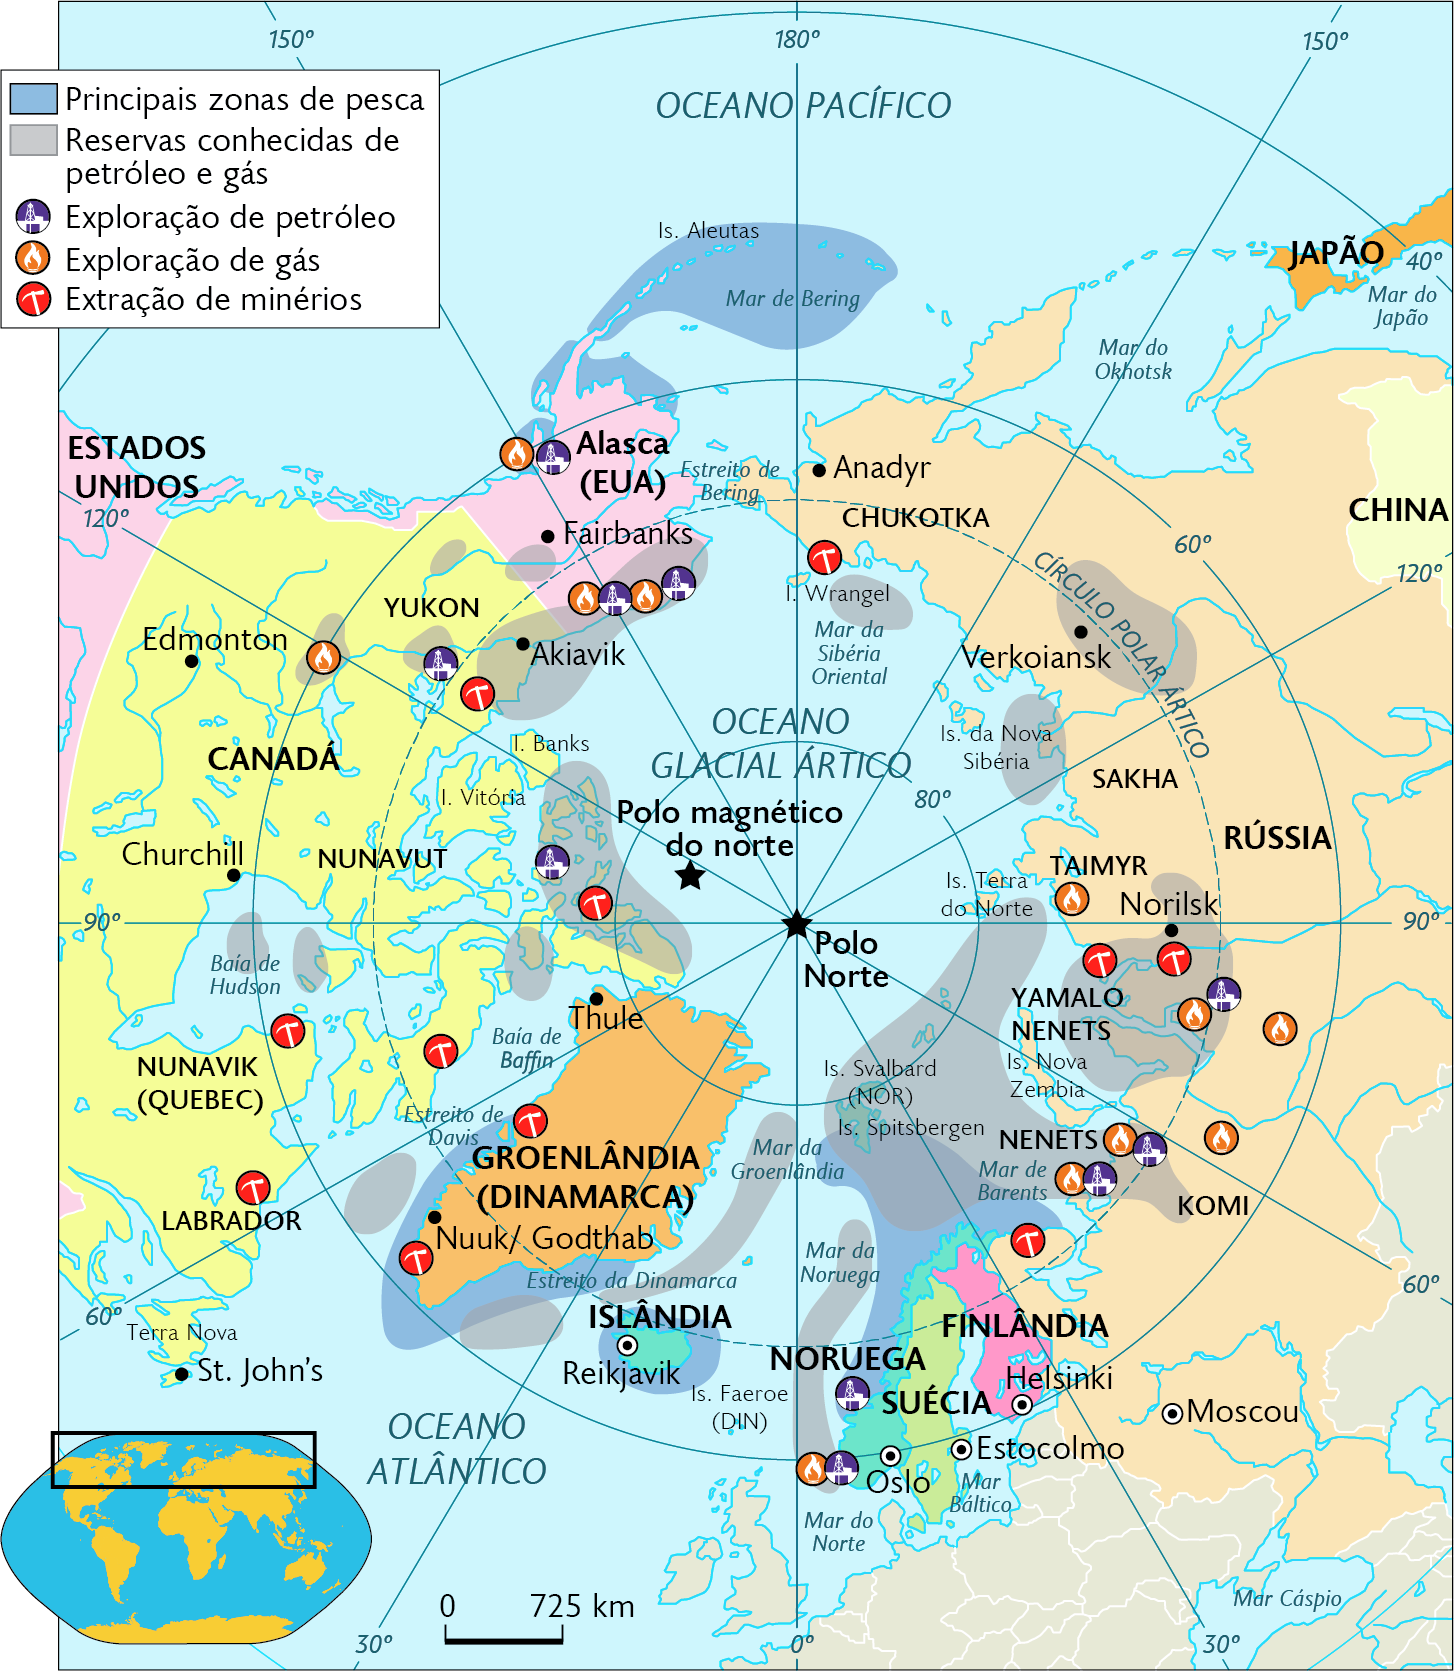 Mapa. Exploração de recursos naturais no Ártico (2019). Mapa em projeção polar. Principais zonas de pesca: áreas superior e inferior. Reservas conhecidas de petróleo e gás: diversas regiões irregulares ao redor do Polo Norte, ao centro. Exploração de petróleo: Alasca (Estados Unidos), Canadá, Noruega, e Rússia. Exploração de gás: Alasca (Estados Unidos), Canadá, Noruega, e Rússia. Extração de minérios: Canadá, Groenlândia (Dinamarca) e Rússia. No canto inferior esquerdo, mapa de localização, planisfério destacando a região descrita, ao lado, a escala: 725 quilômetros por centímetro.